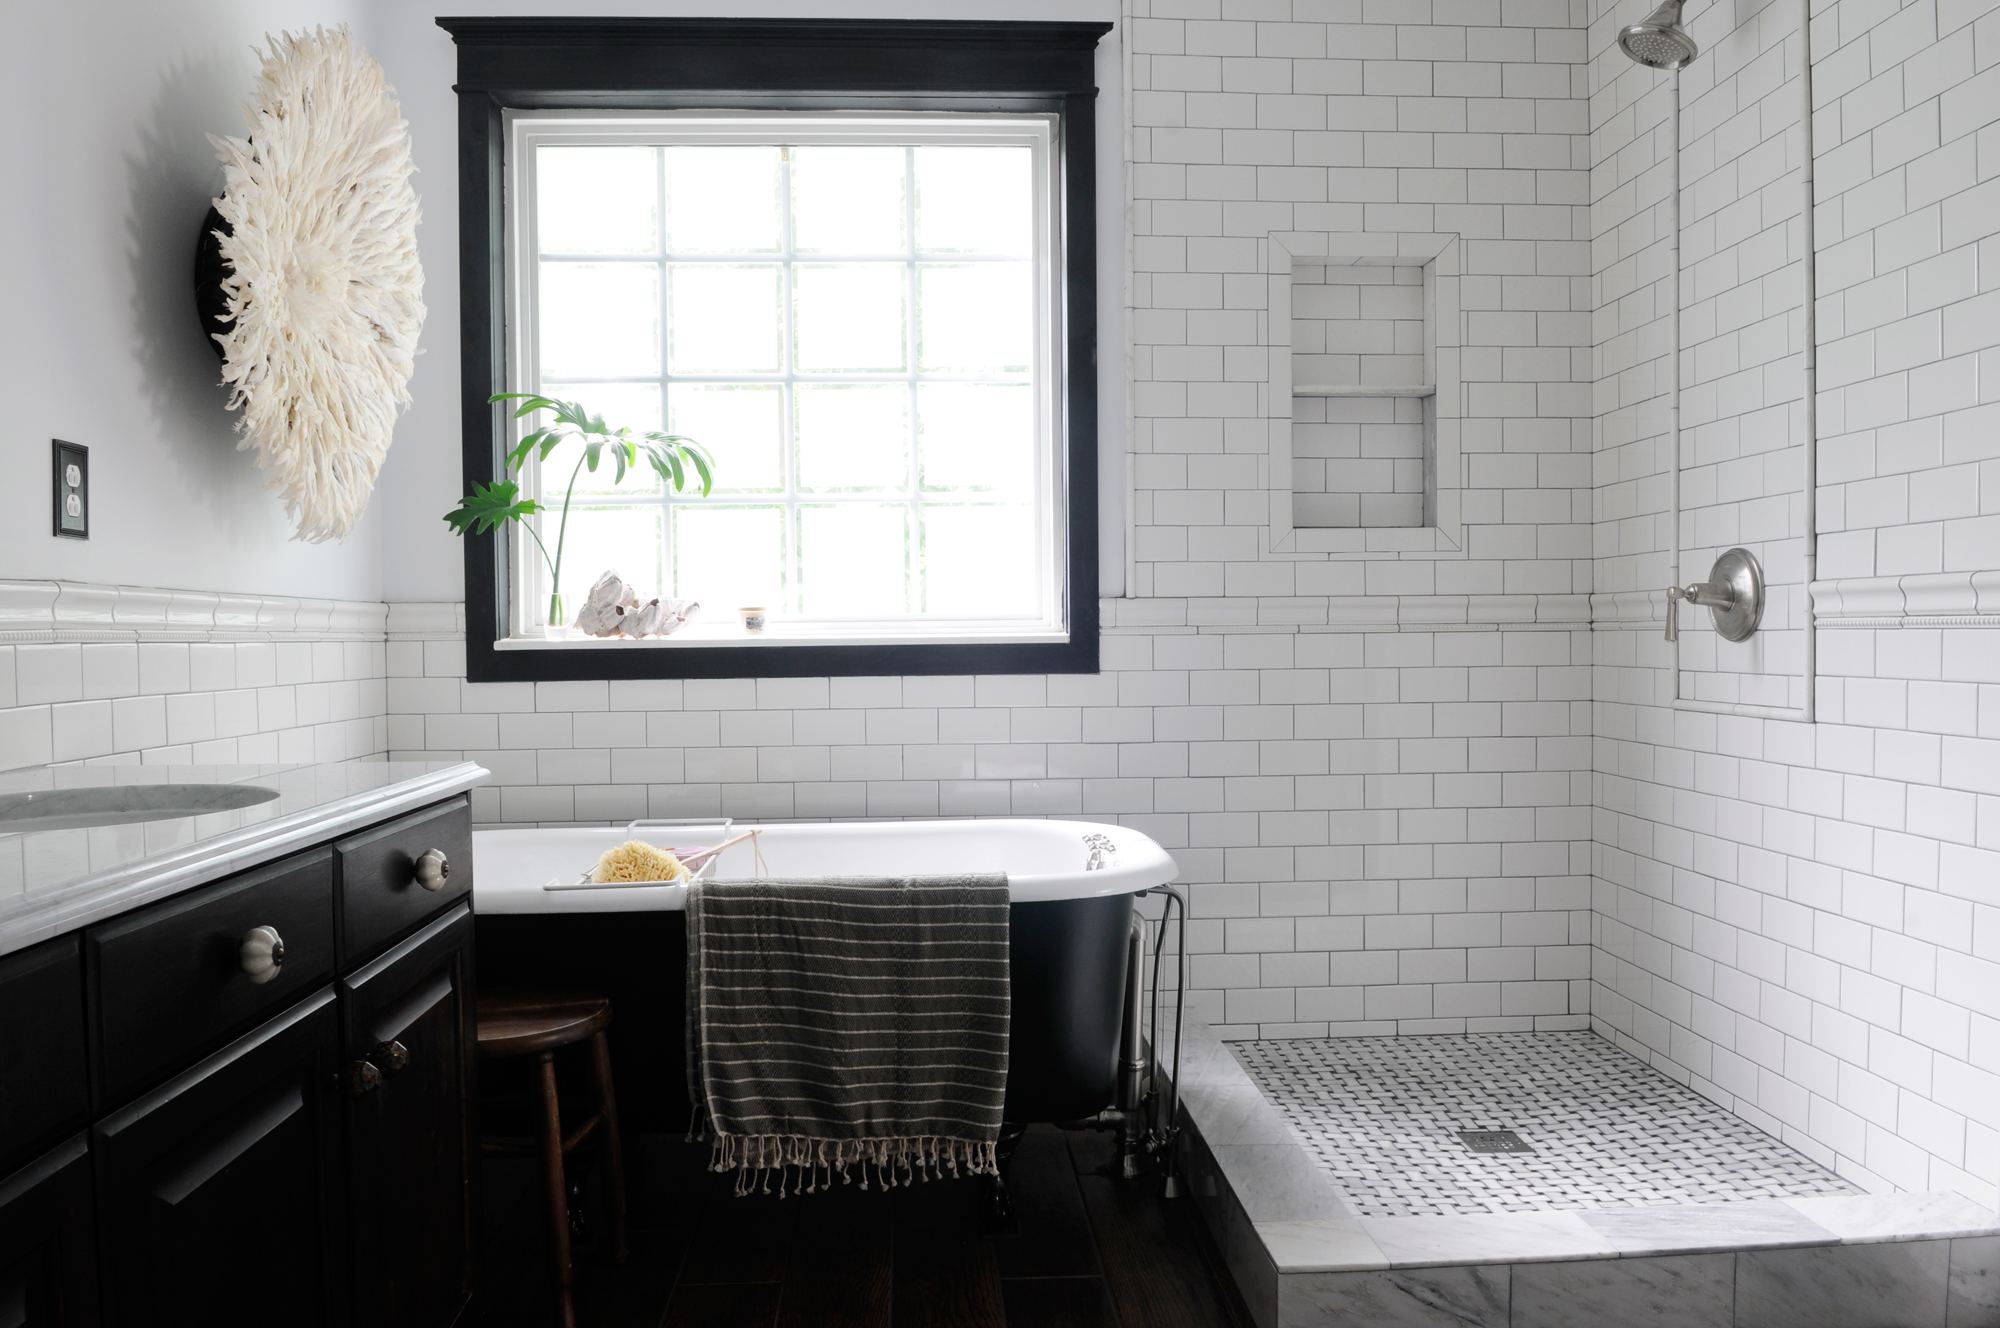 Ванная комната черно-белого цвета при мягком освещении